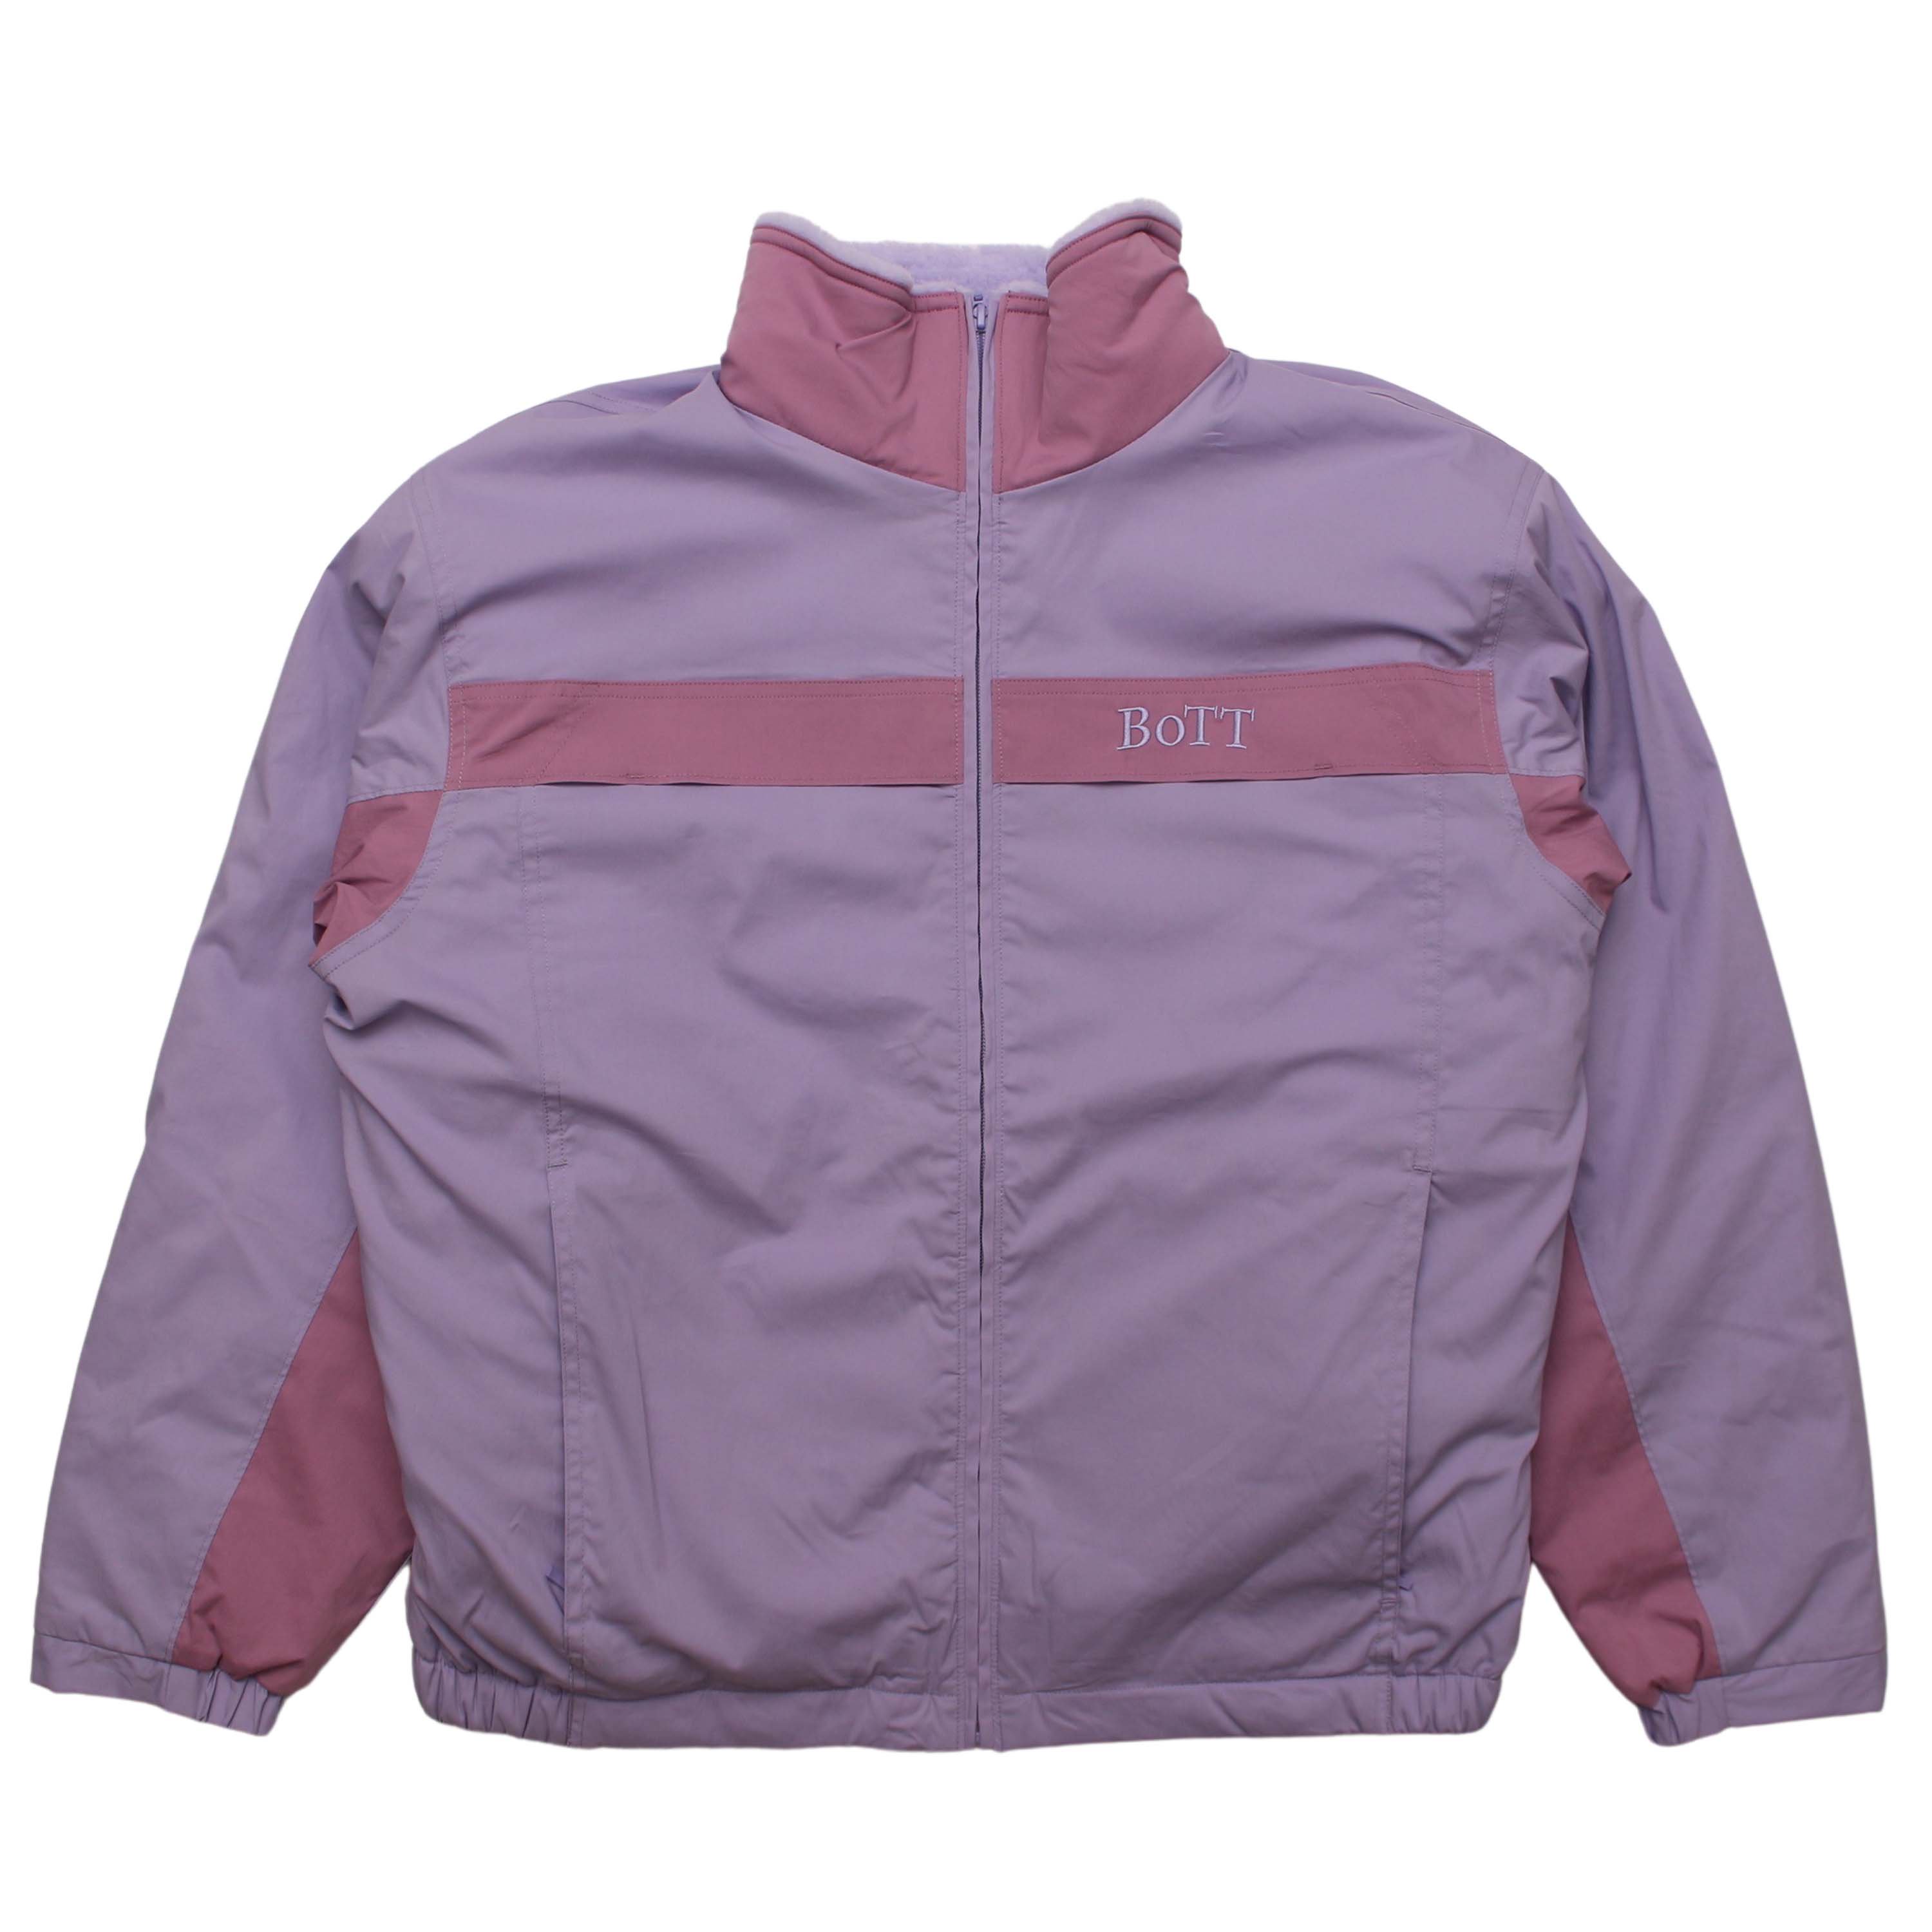 BoTT 2Tone Track Jacket (Purple)メンズ